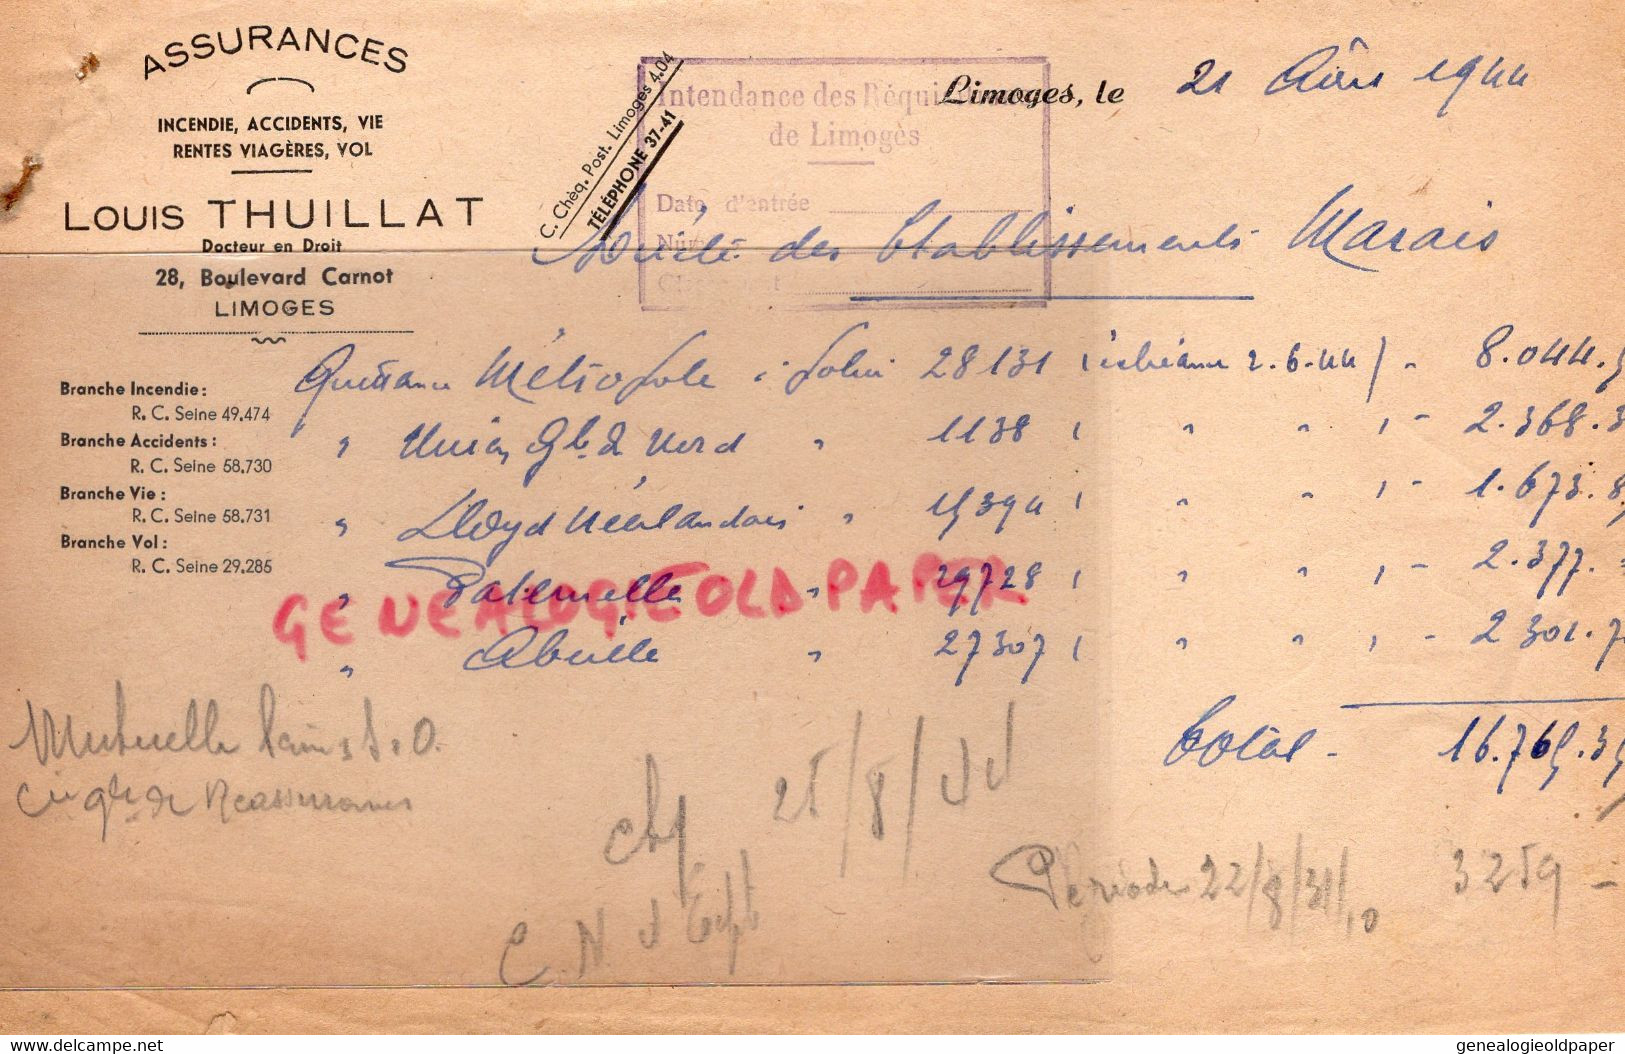 87- LIMOGES- FACTURE ASSURANCES LOUIS THUILLAT-DOCTEUR EN DROIT-28 BD CARNOT- 1944-RARE CACHET REQUISITIONS GUERRE - Bank & Insurance